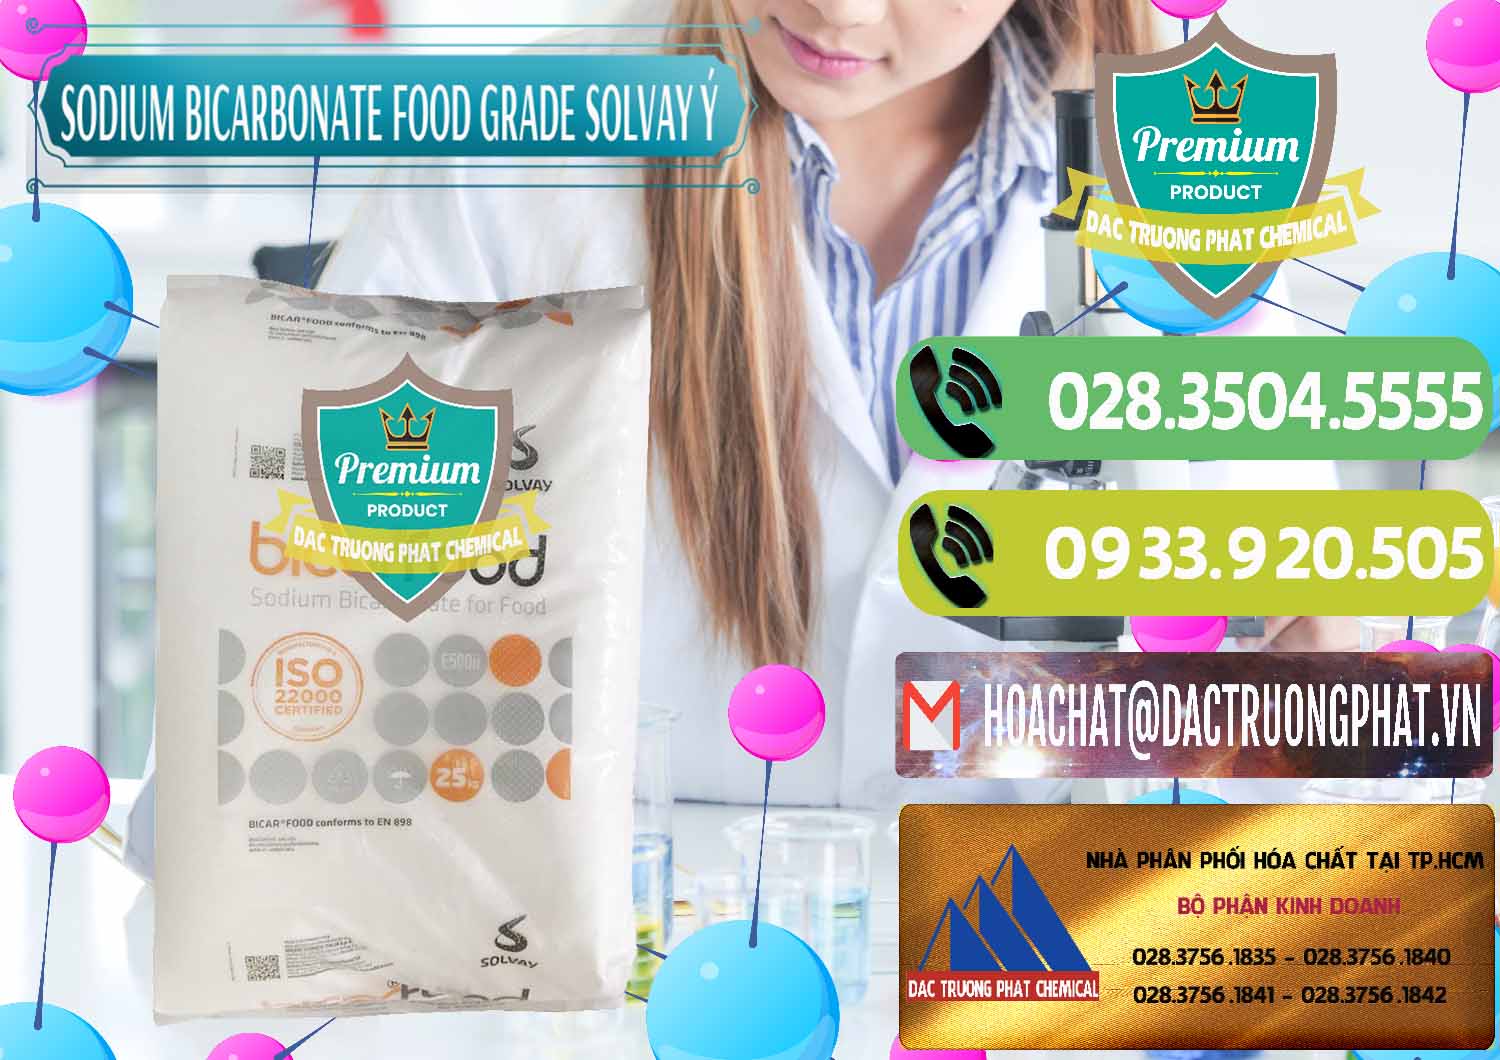 Chuyên bán - cung cấp Sodium Bicarbonate – Bicar NaHCO3 Food Grade Solvay Ý Italy - 0220 - Nơi chuyên bán ( phân phối ) hóa chất tại TP.HCM - hoachatmientay.vn